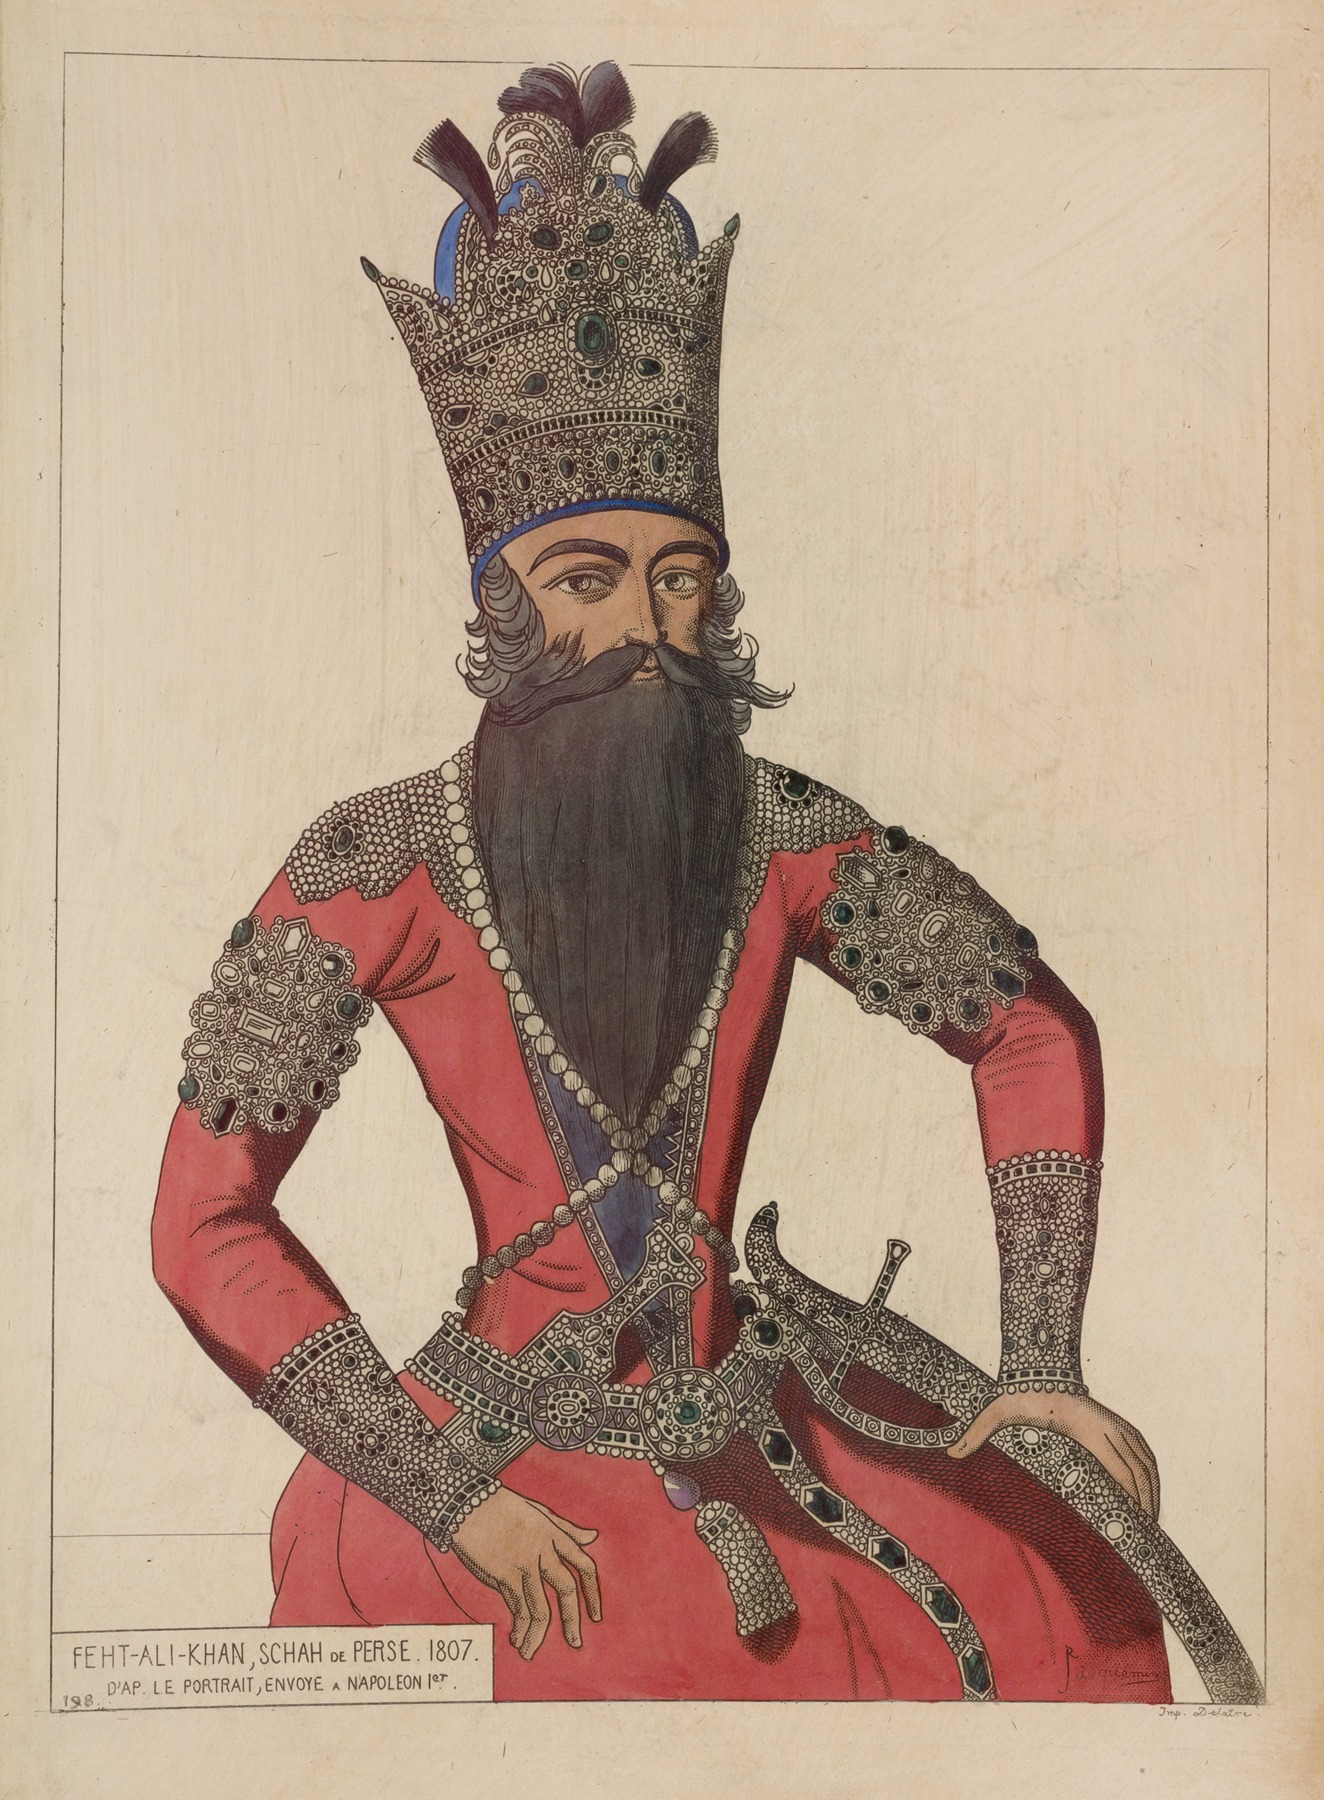 Raphaël Jacquemin - Feht-Ali-Khan, Schah de Perse. 1807. D’ap[rès] le portrait, envoye a Napoleon 1er.